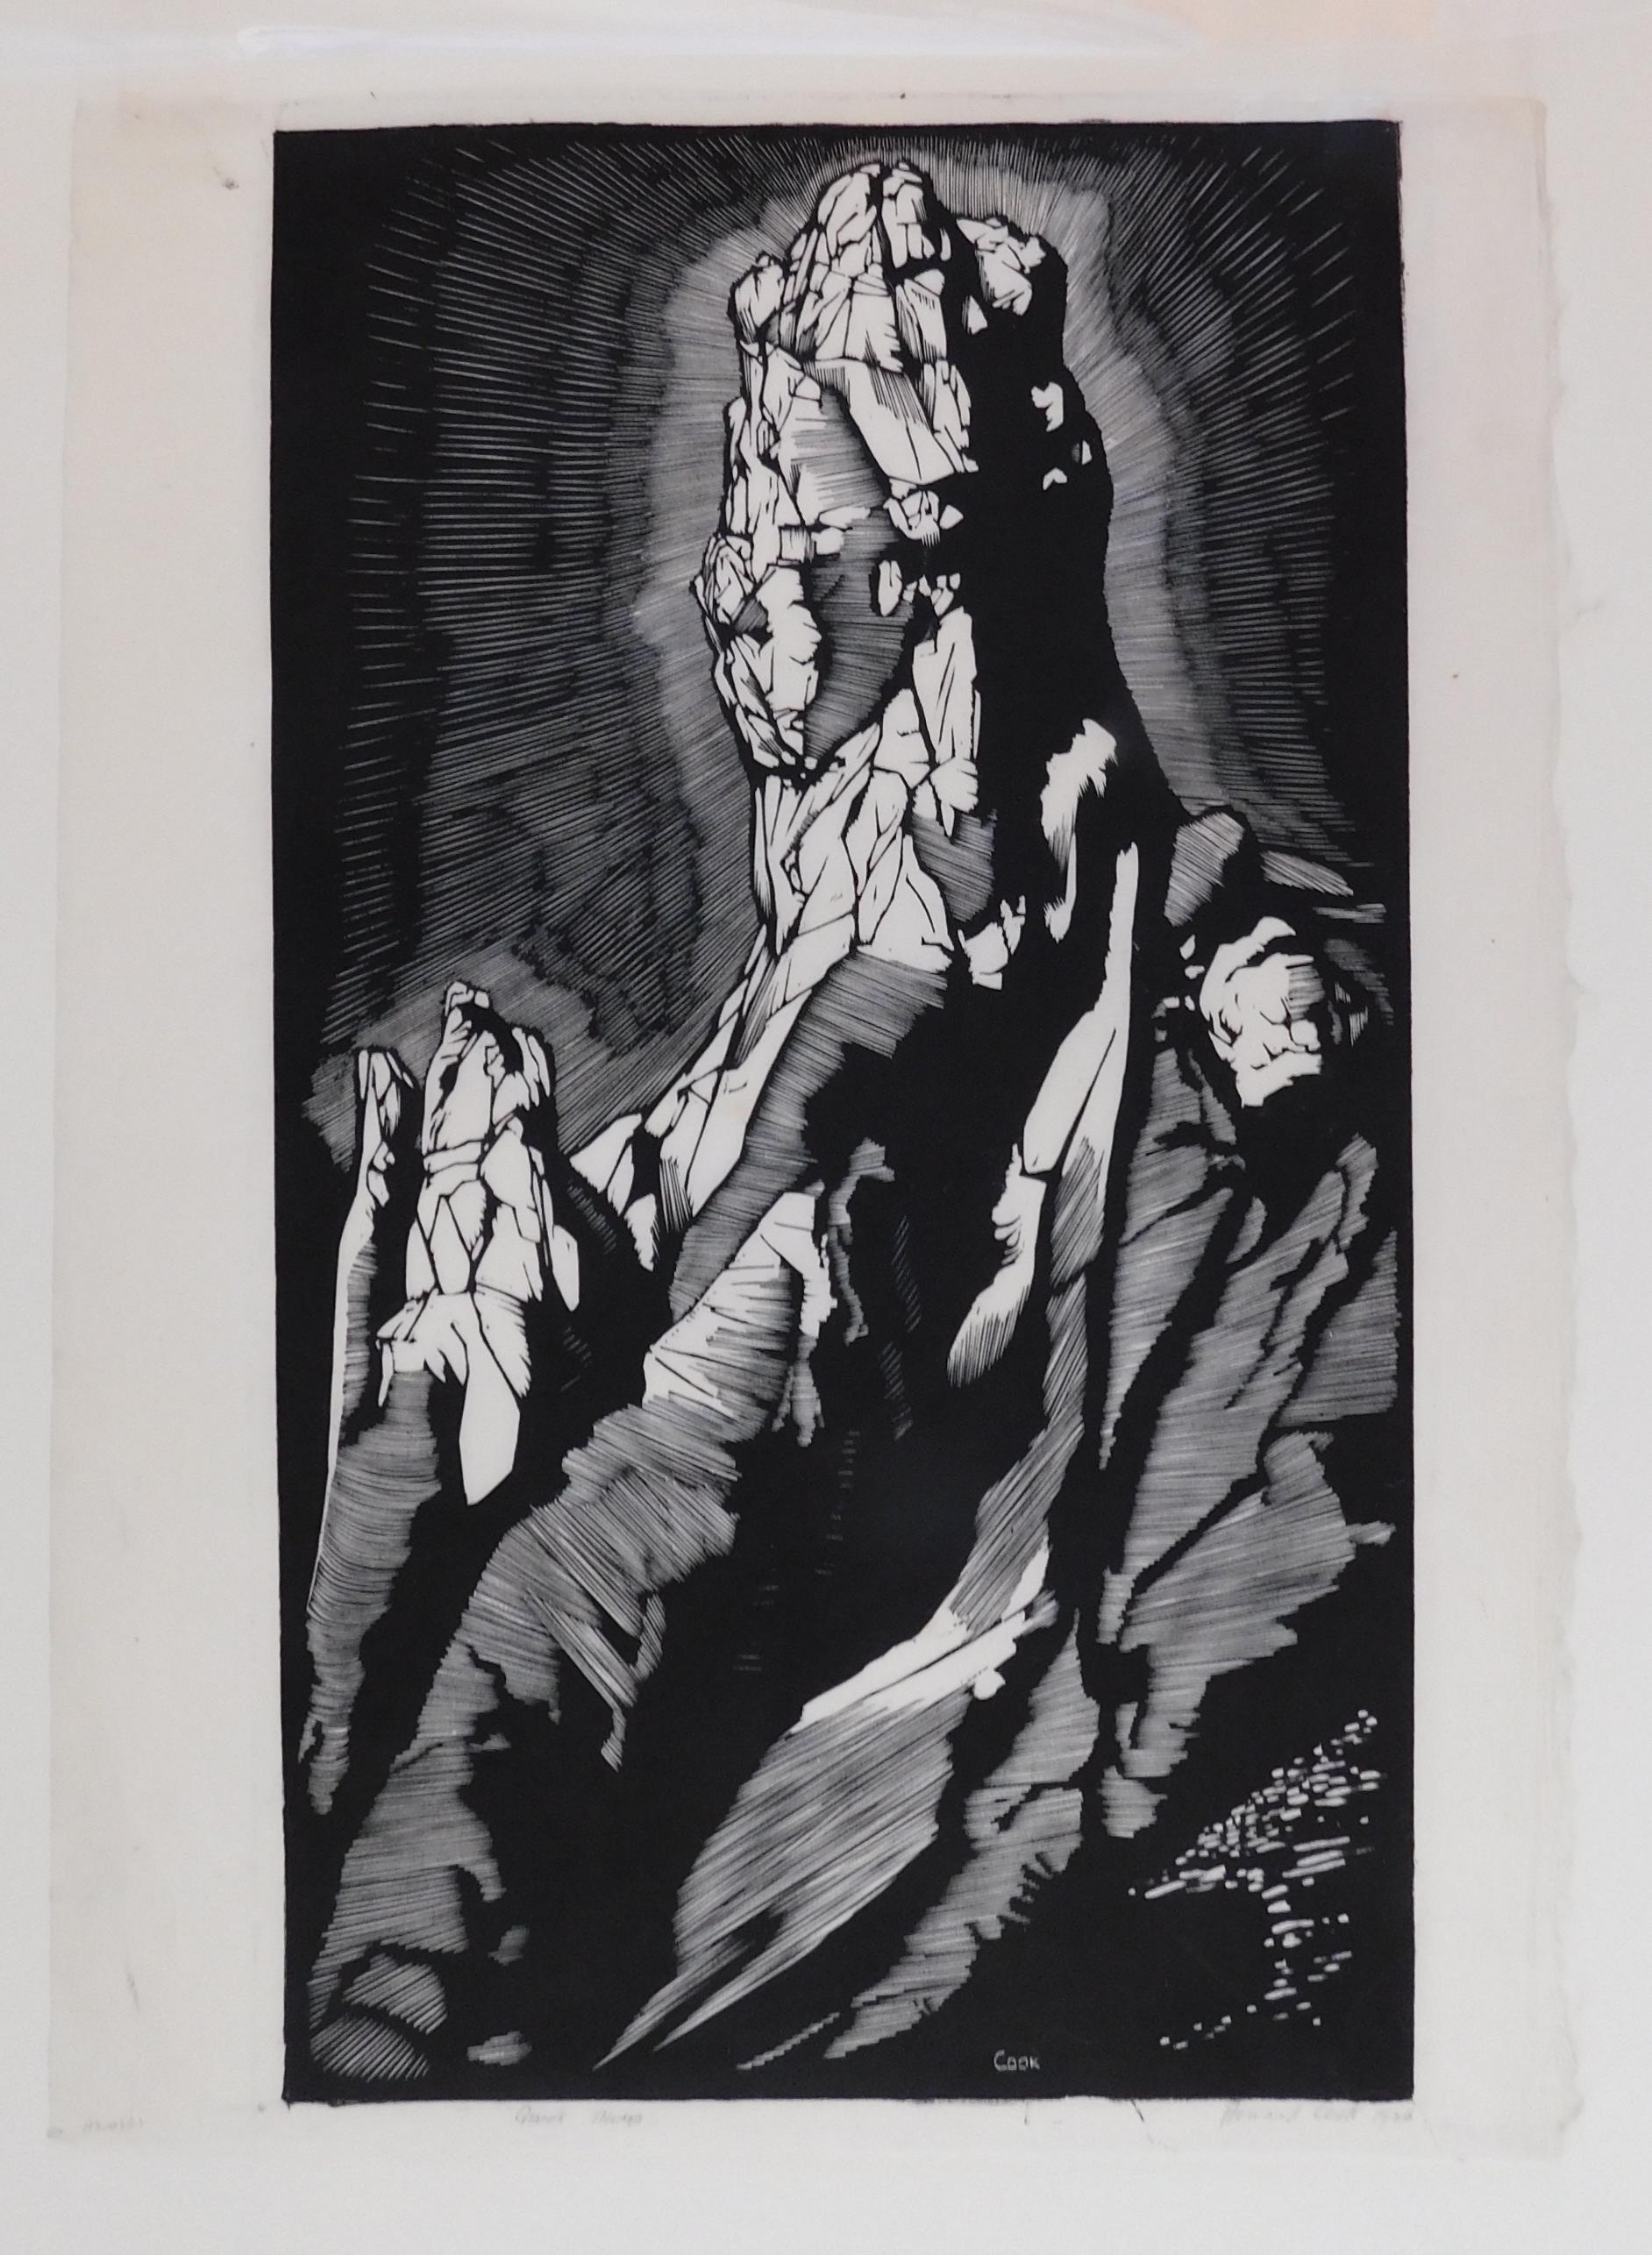 Wunderschöner Holzschnitt des Künstlers Howard Cook (1901-1980) aus Taos.
Titel: 